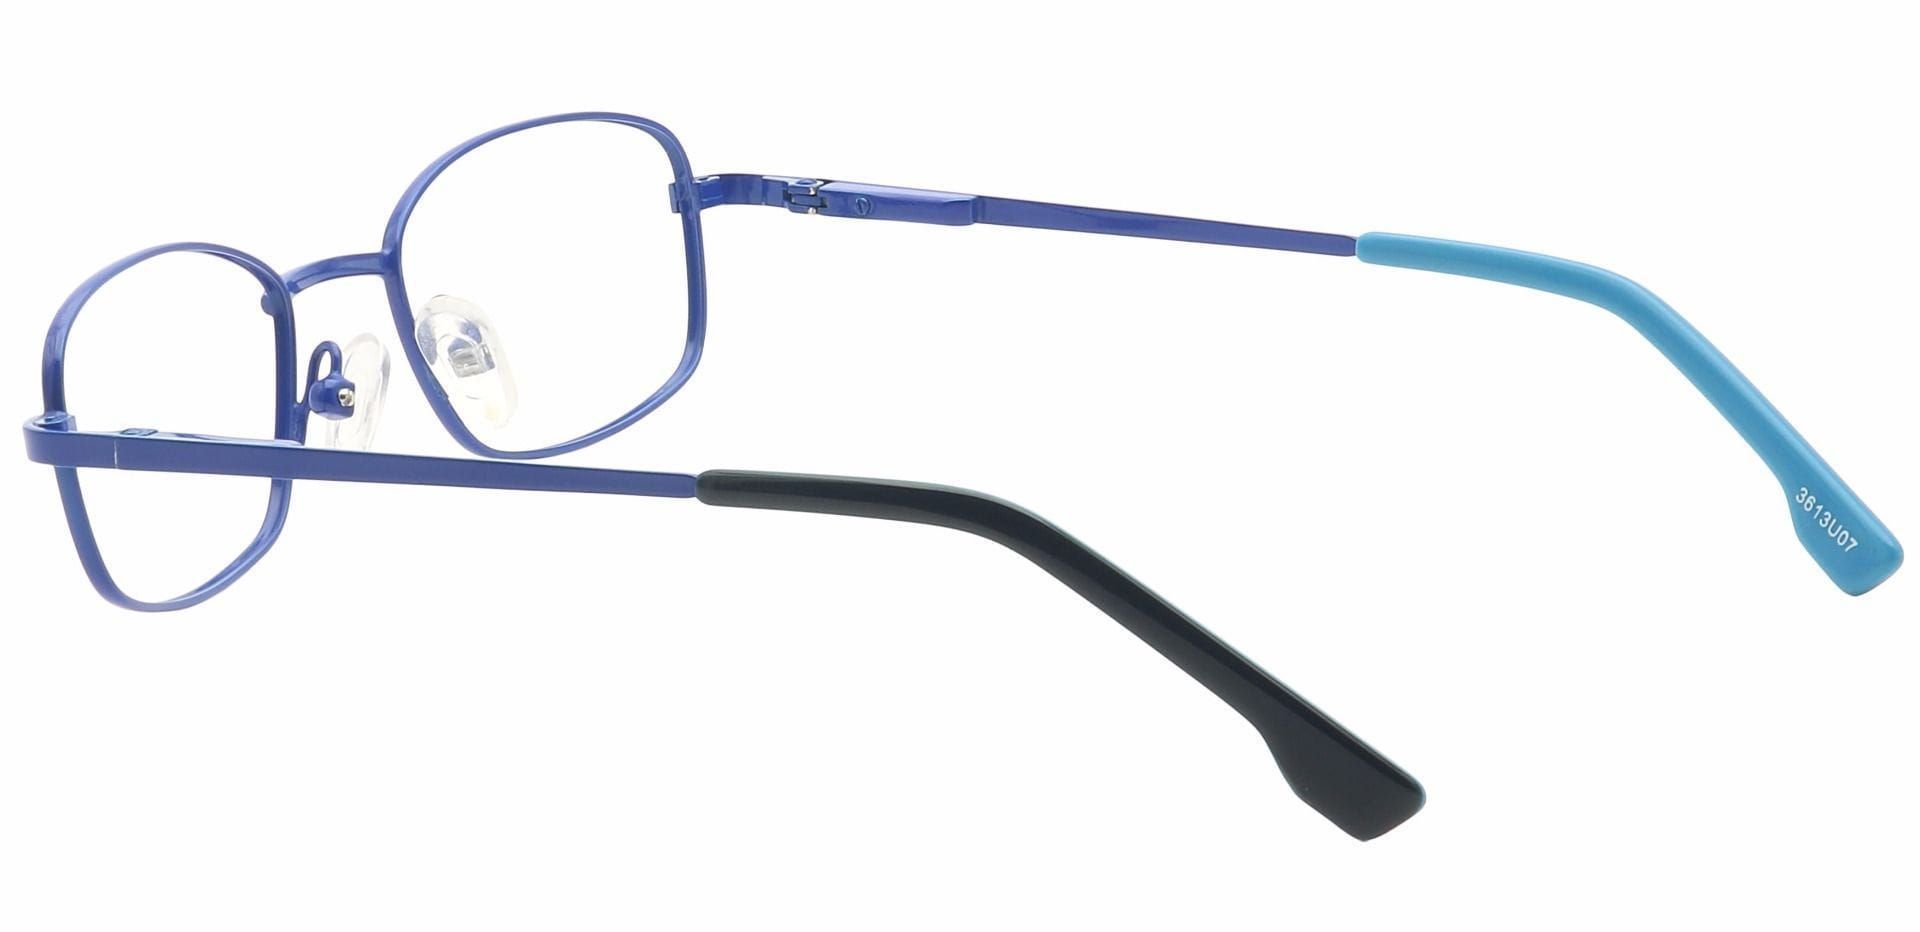 Gil Rectangle Non-Rx Glasses - Blue